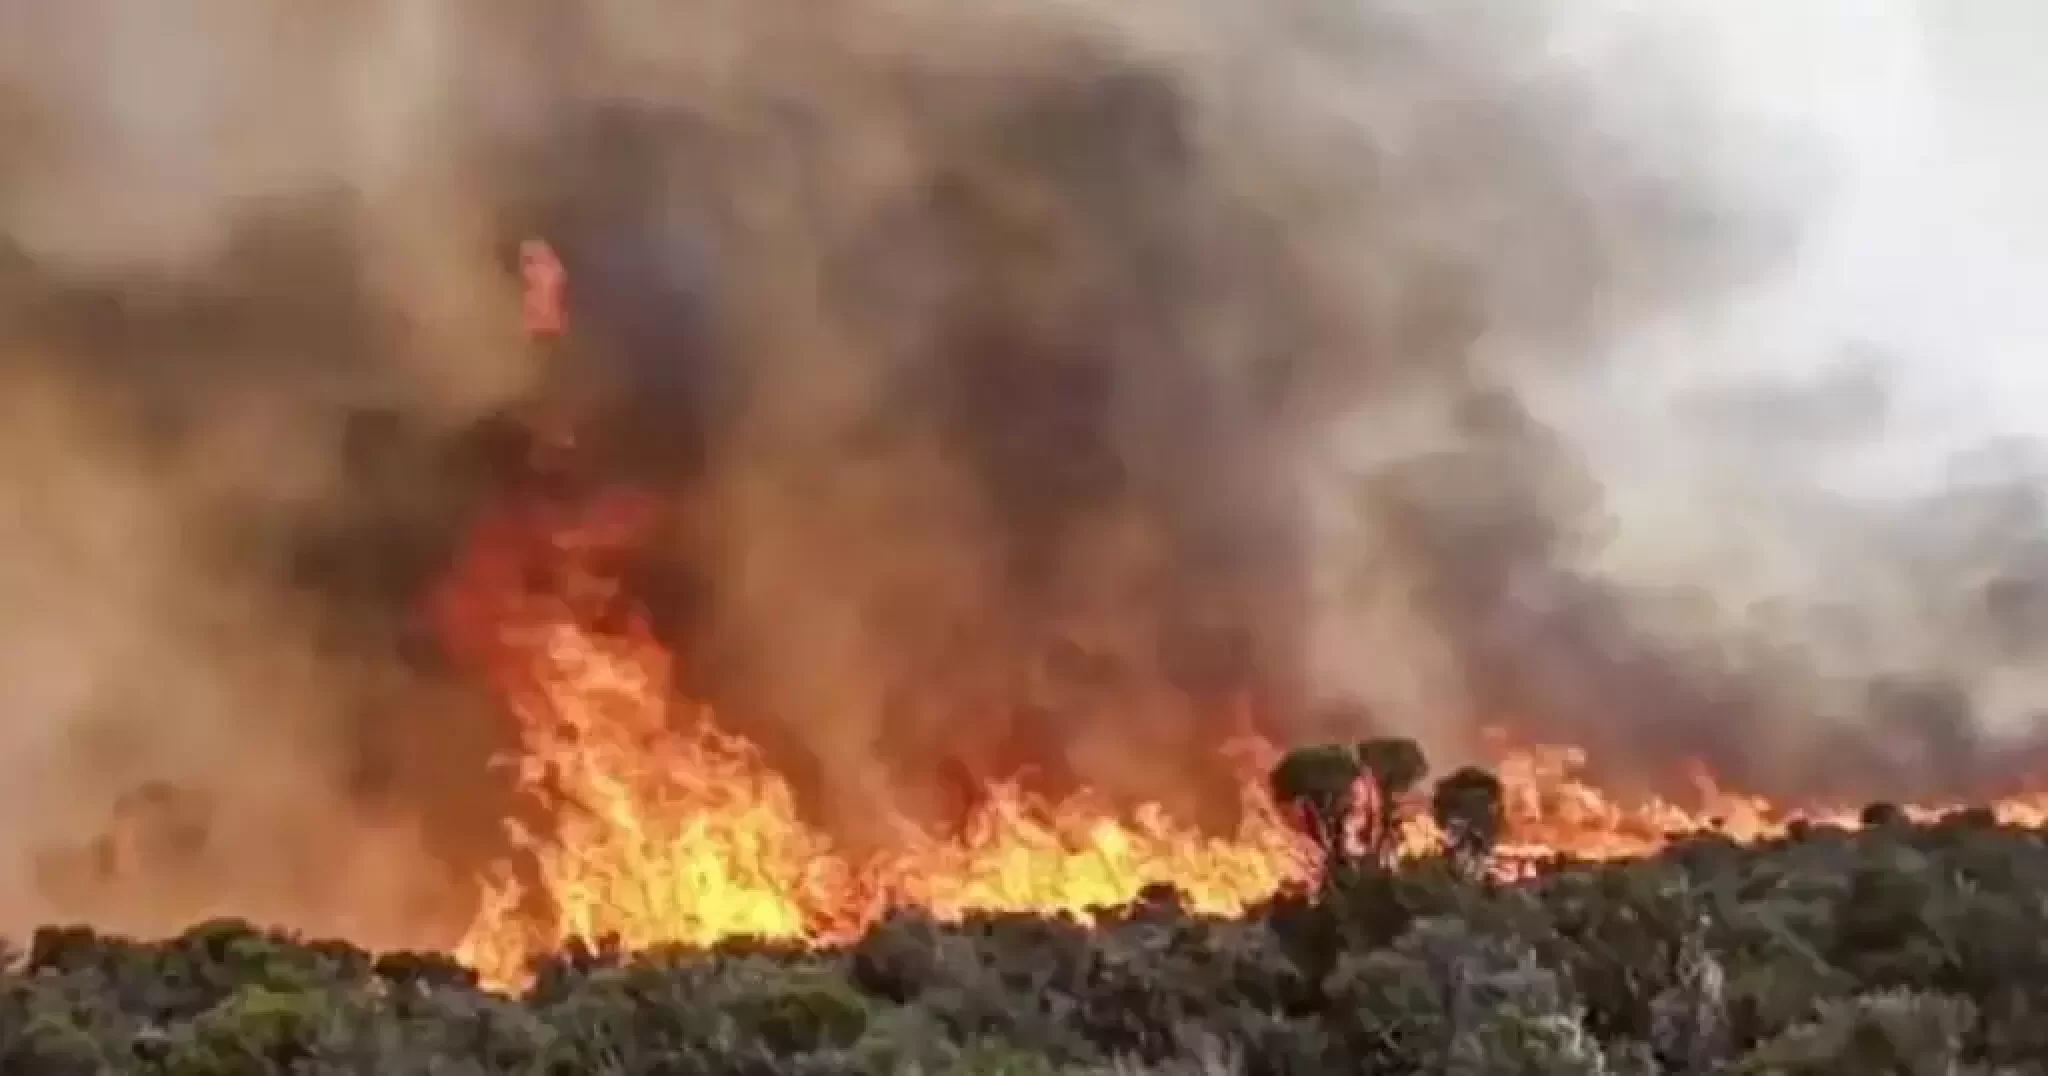 Tanzanian firefighters battle blaze on Mount Kilimanjaro